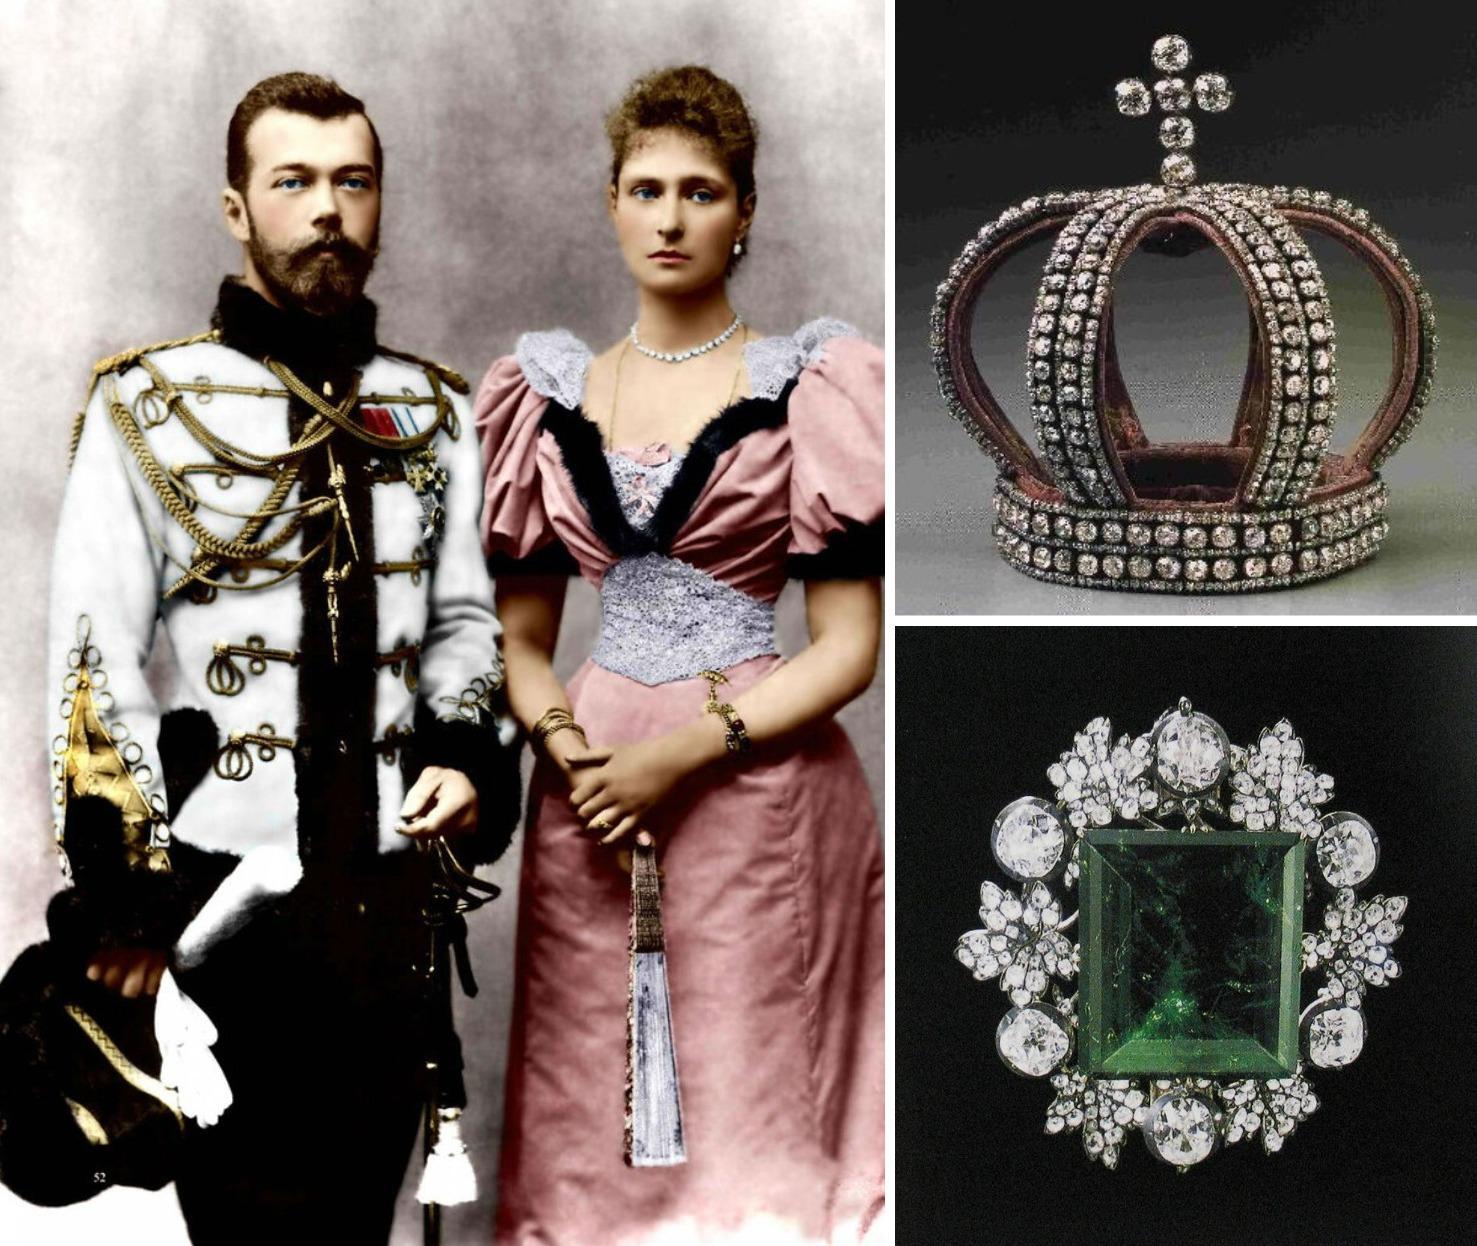 Пропавшие сокровища российской короны: куда делись уникальные драгоценности императорской семьи